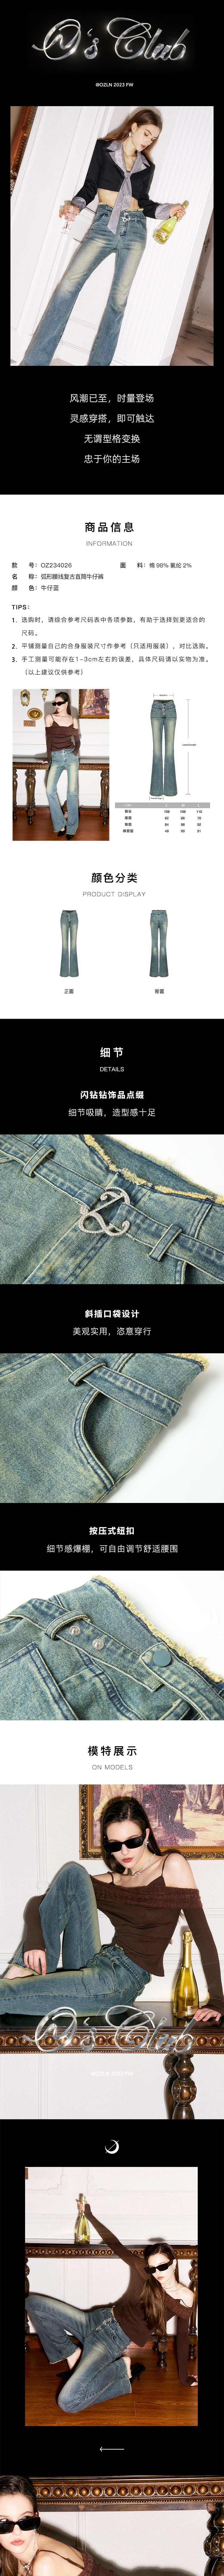 【中国直邮】OZLN 早秋新品弧形腰线经典复古高腰修身显瘦直筒牛仔裤 M